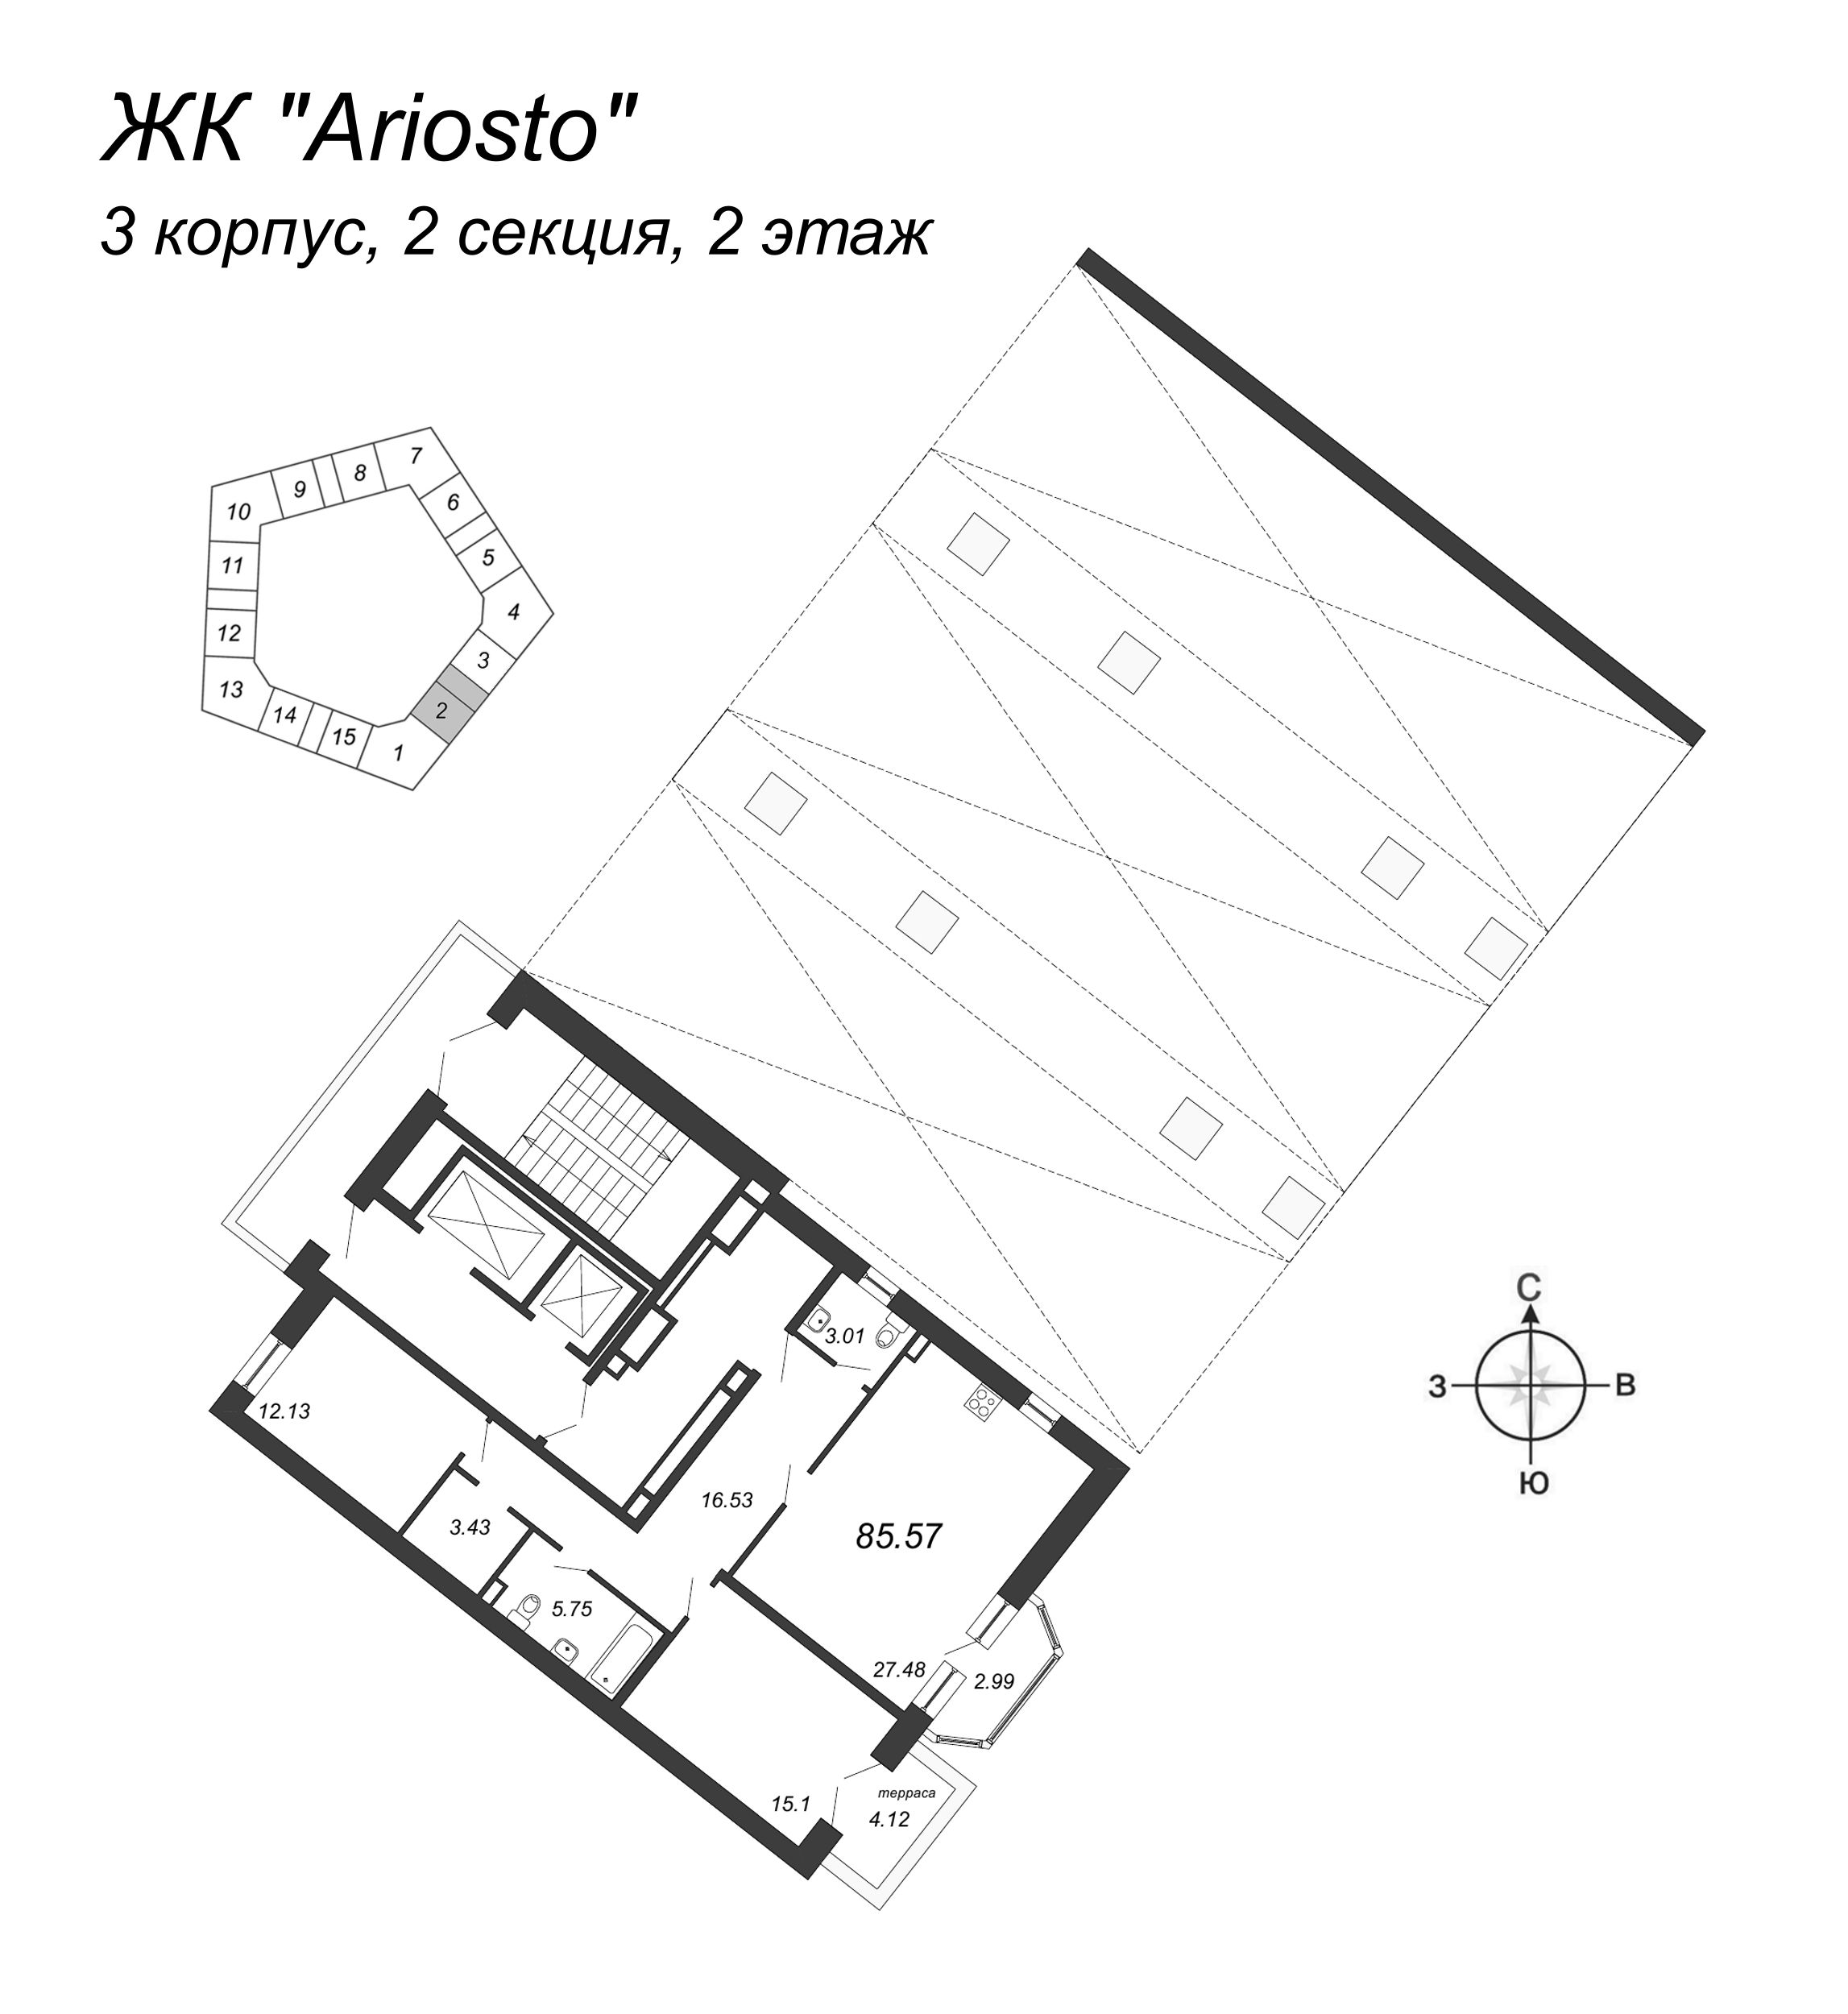 3-комнатная (Евро) квартира, 85.57 м² в ЖК "Ariosto" - планировка этажа